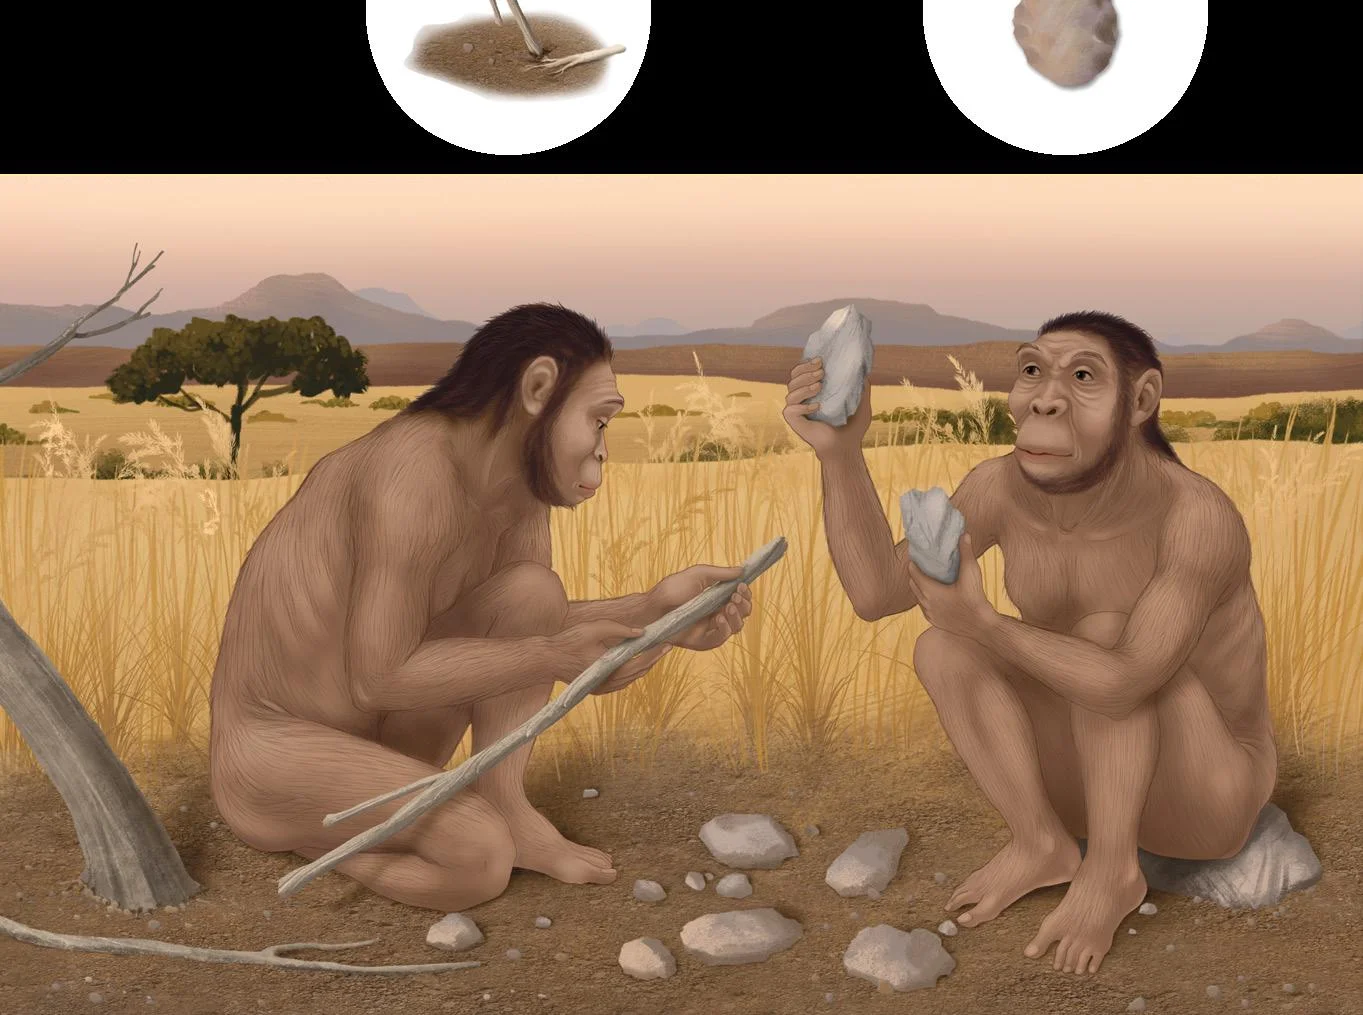 Evoluzione dell'uomo